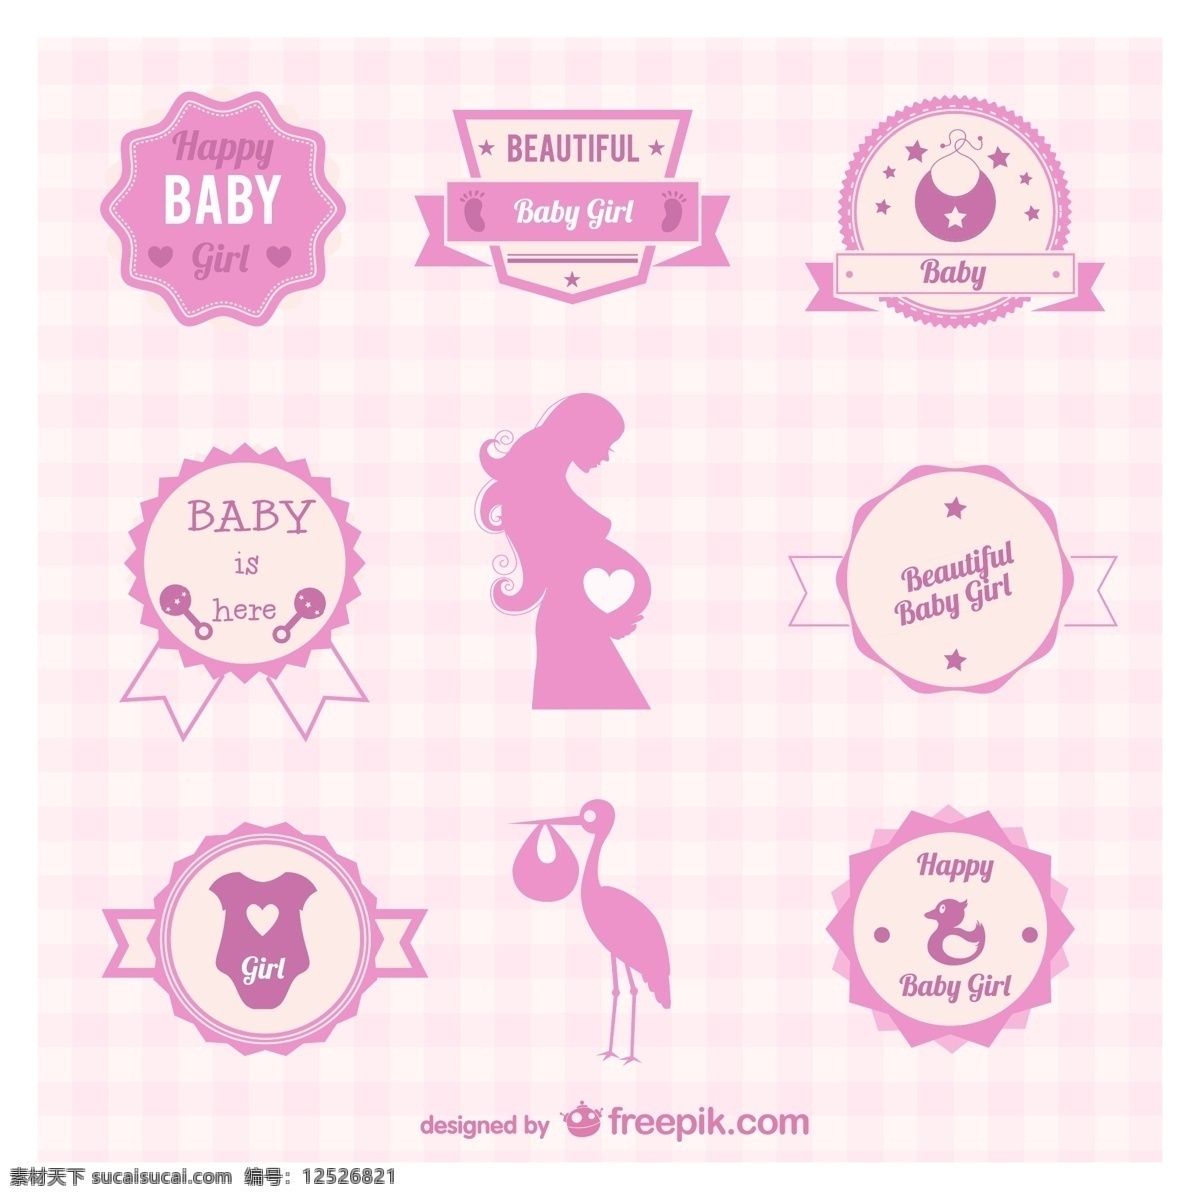 粉色 迎 婴 元素 标签 矢量 矢量图 婴儿 孕妇 迎婴 送子鹤 日常生活